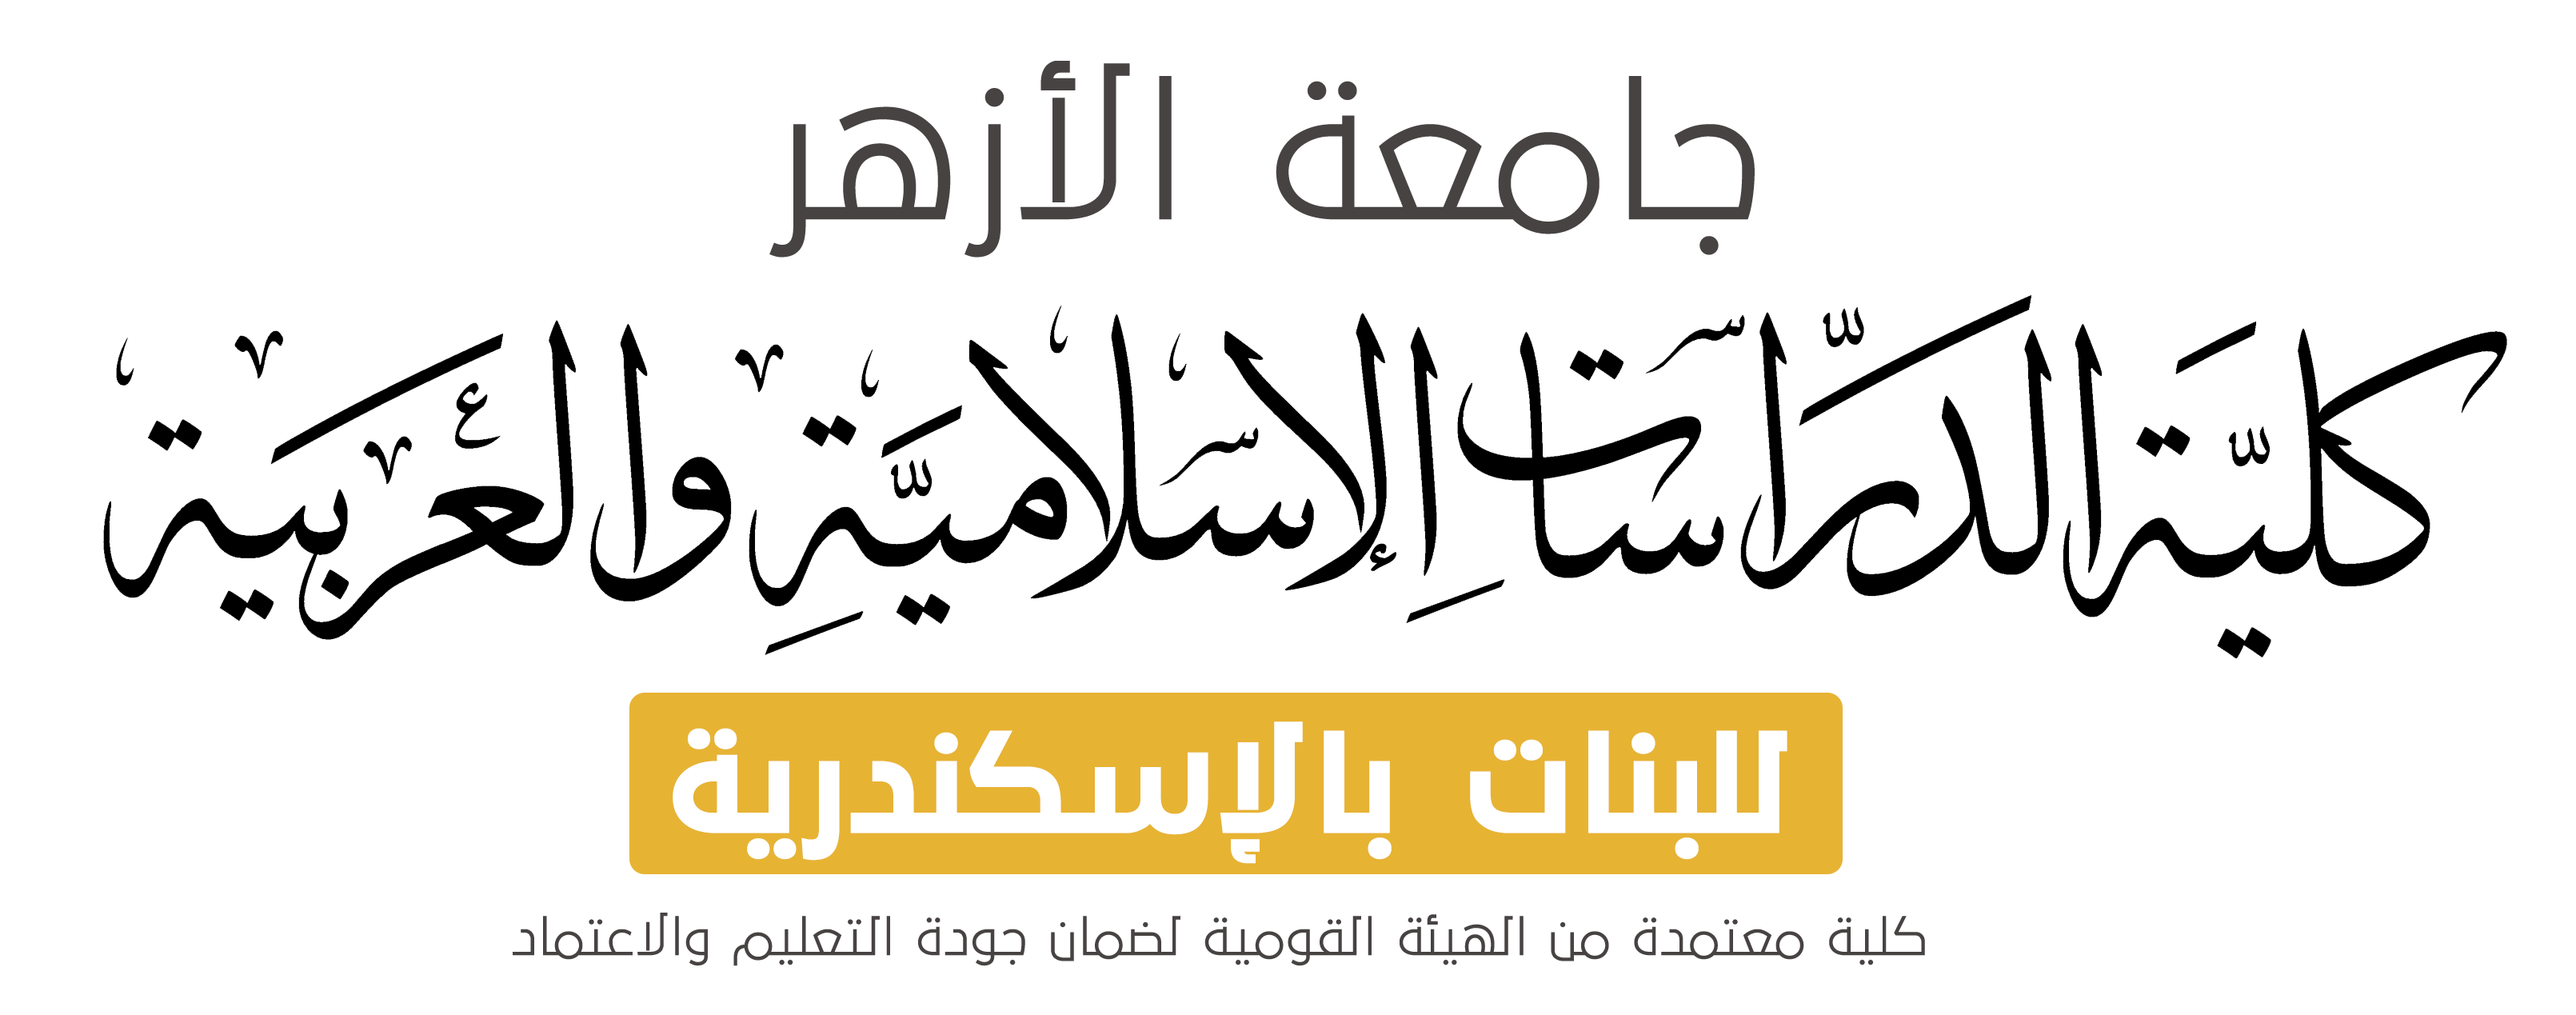 الموقع الرسمي لكلية الدراسات الإسلامية والعربية للبنات بالإسكندرية